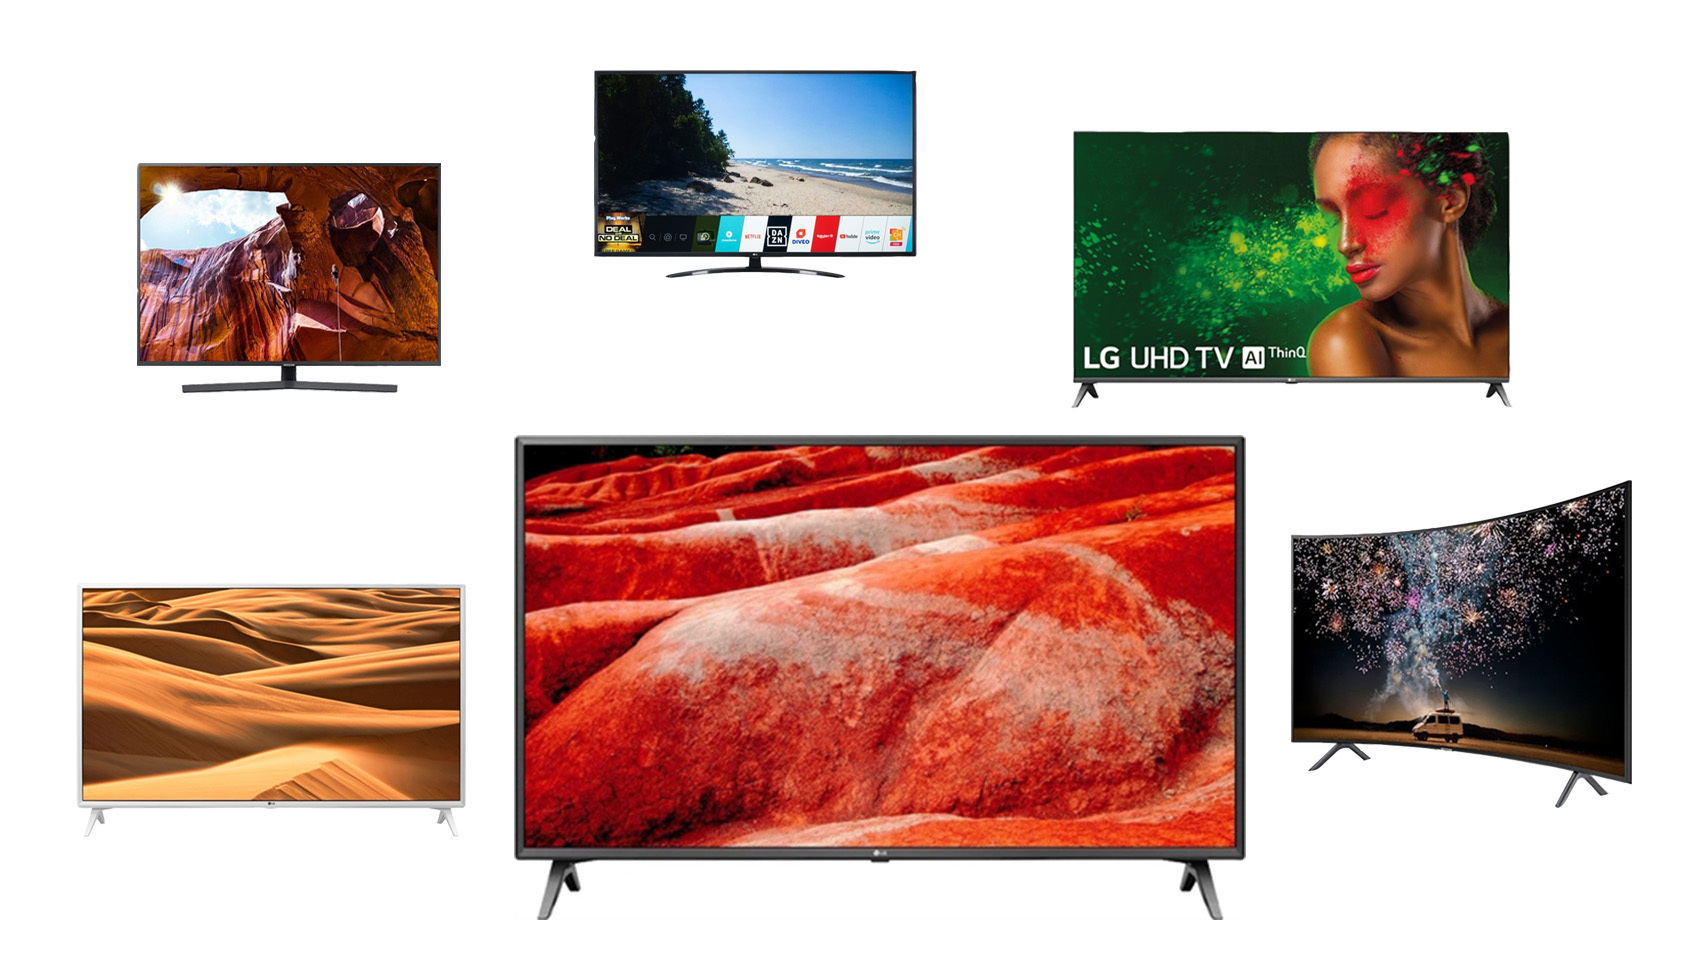 Las mejores Smart TV de TD System, ¿Es fiable esta marca? Opinión